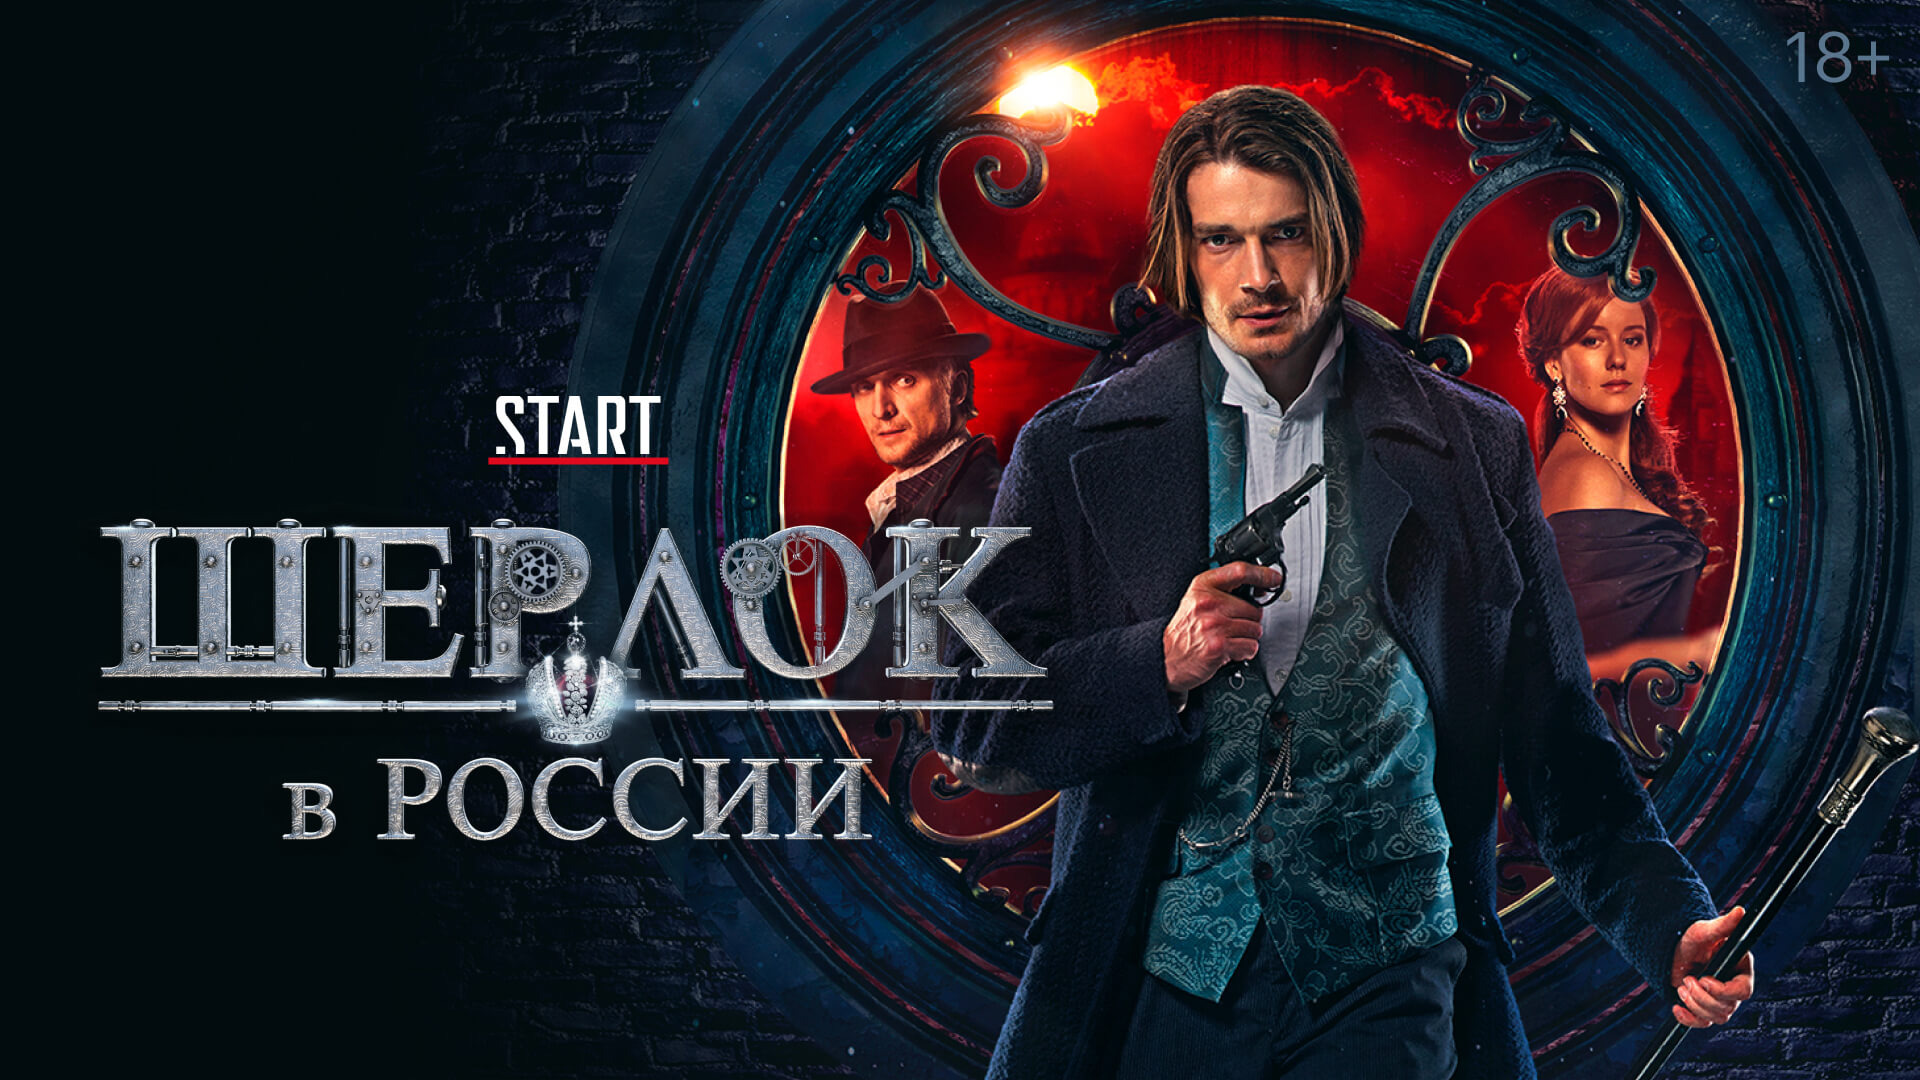 Show Шерлок в России